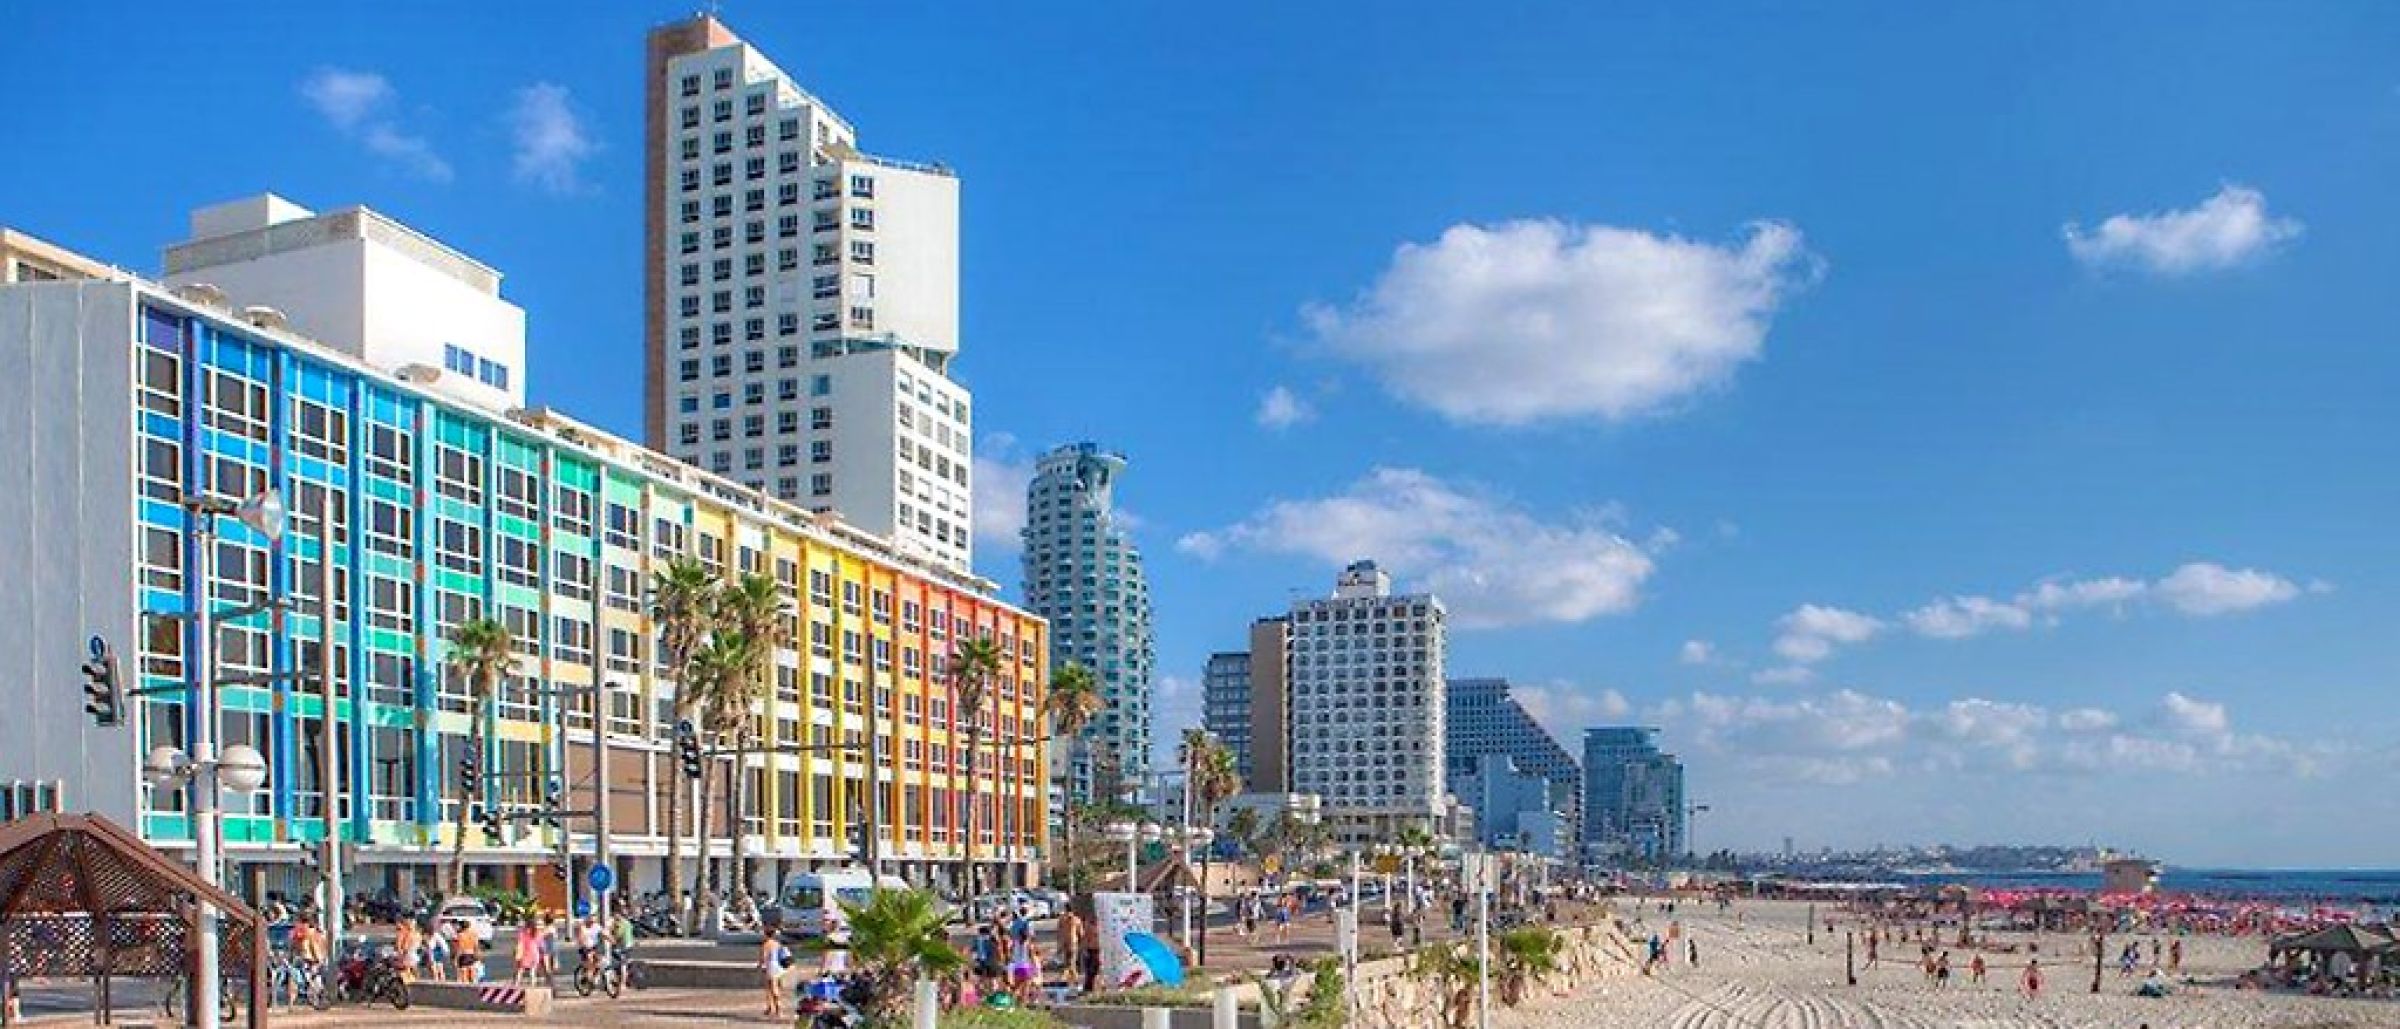 Strandpromenade in Tel Aviv